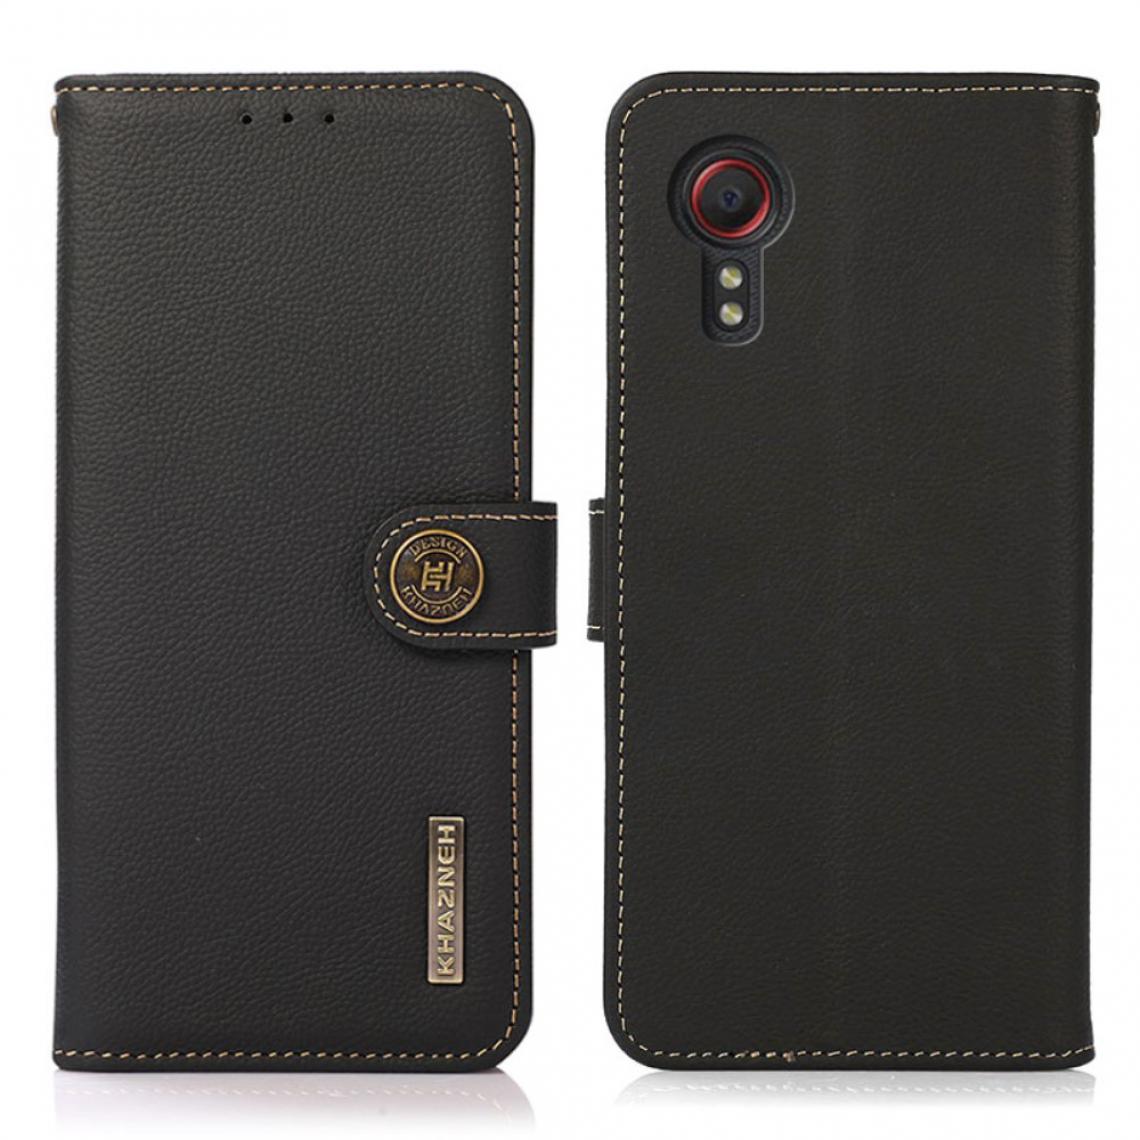 Other - Etui en cuir véritable Conception de balayage antivol RFID noir pour votre Samsung Galaxy Xcover 5 - Coque, étui smartphone